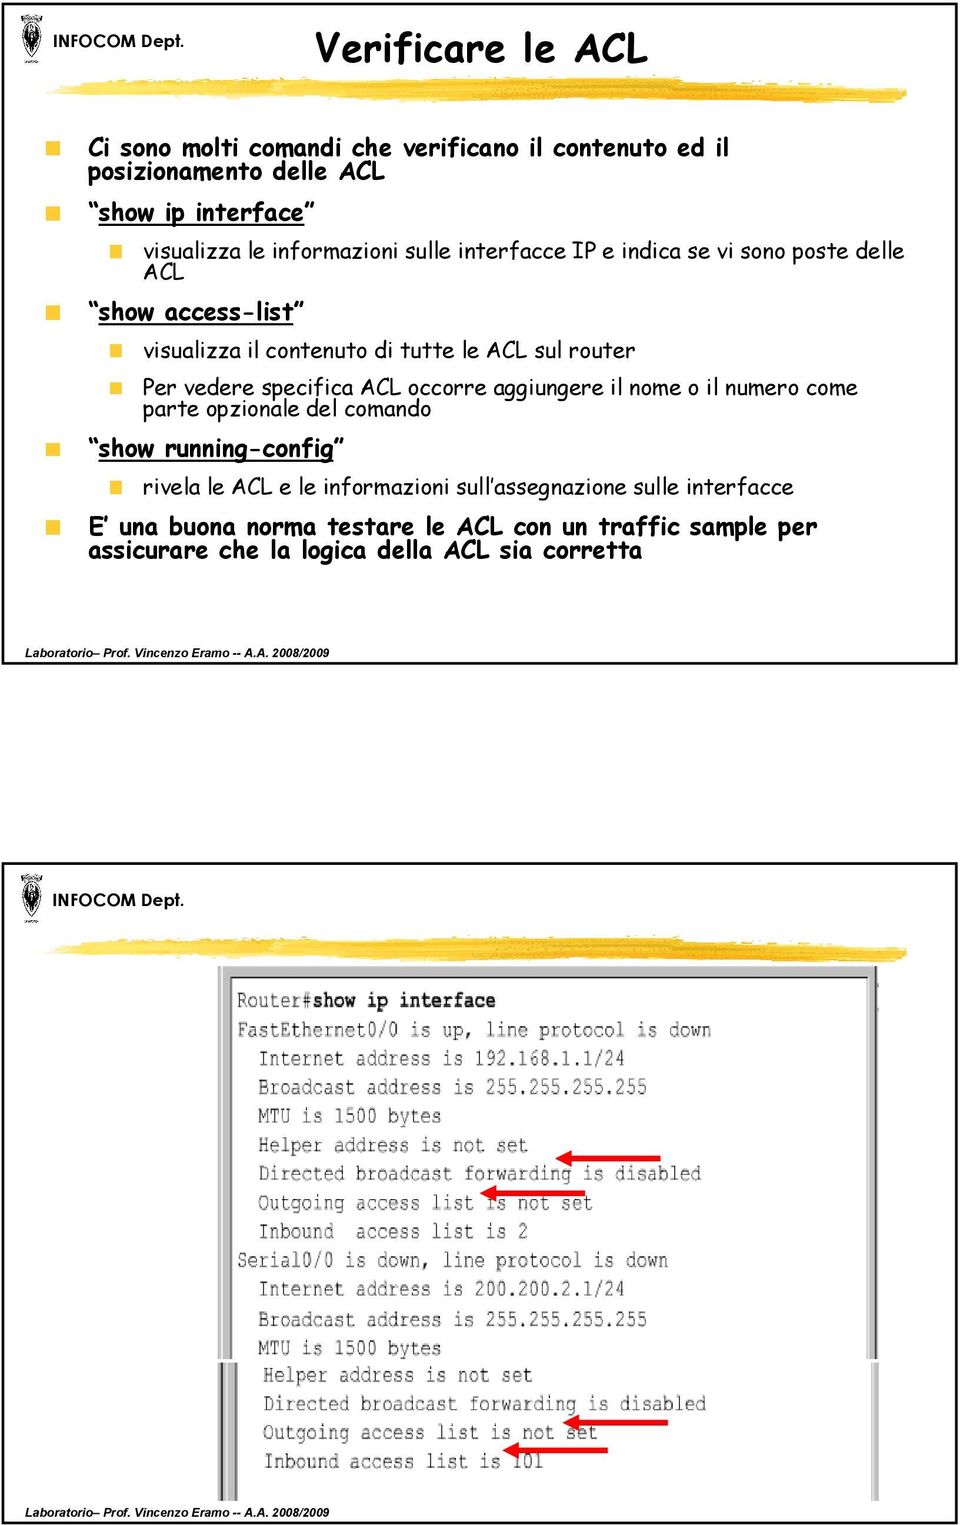 vedere specifica ACL occorre aggiungere il nome o il numero come parte opzionale del comando sh show running-config nfi rivela le ACL e le